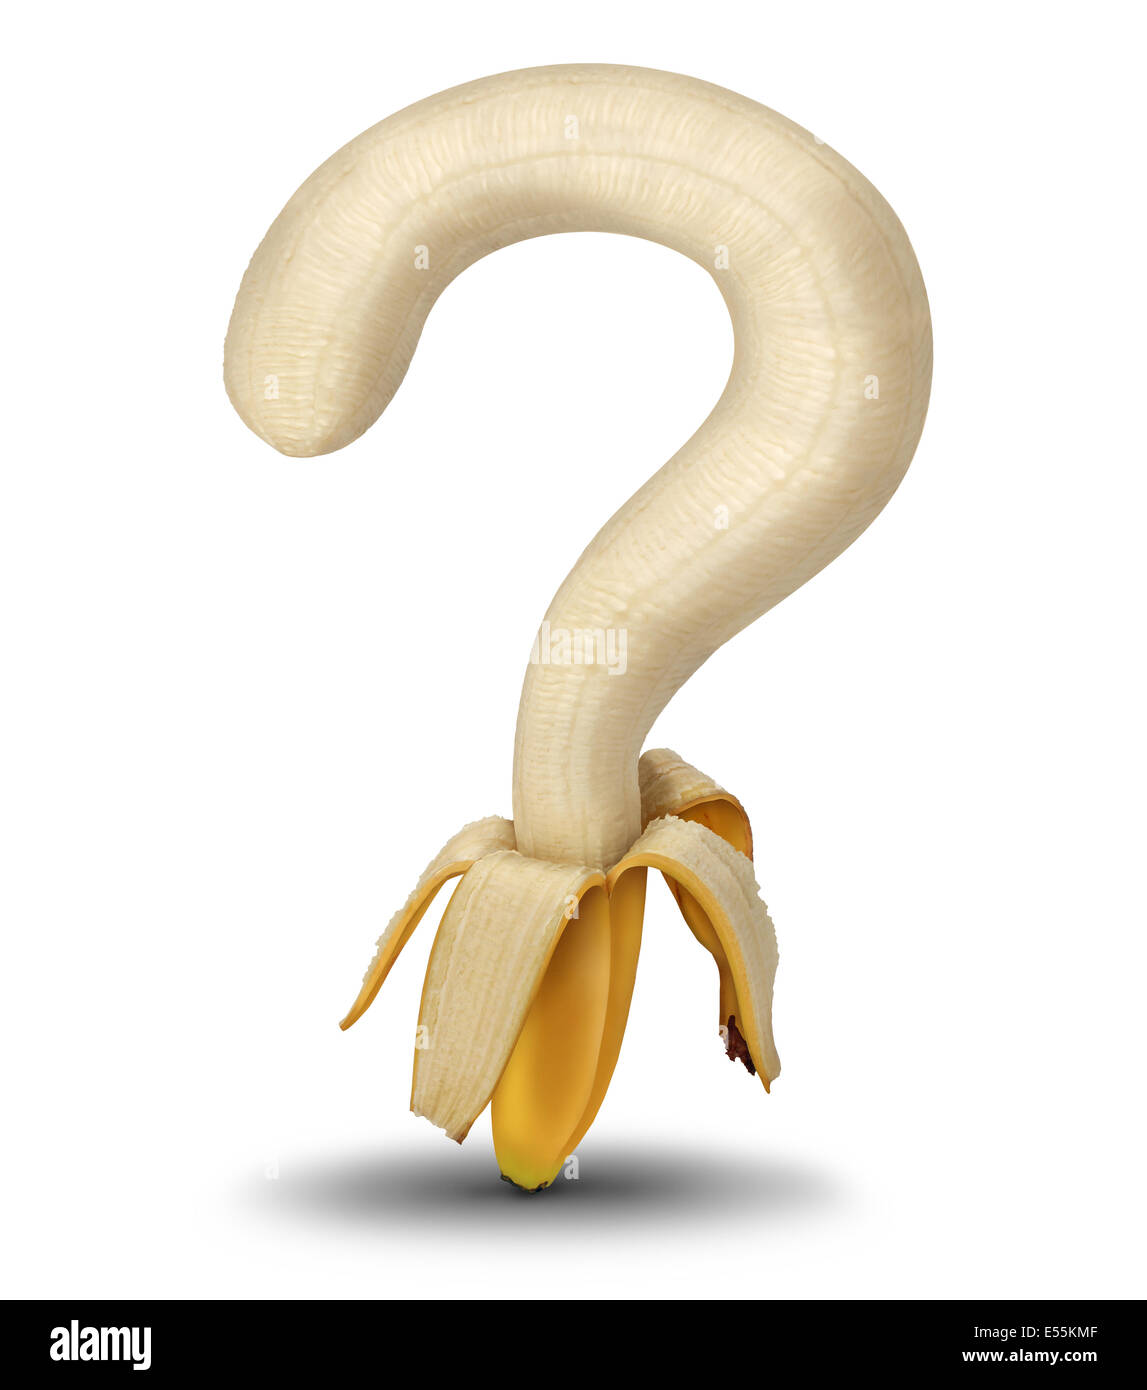 Fragen der Ernährung und gesundes Essen Optionen im Supermarkt oder Markt mit Aan öffnen geschälte Banane geformt wie ein Fragezeichen als Symbol für Ernährung Beratung und Essgewohnheiten auf weißem Hintergrund. Stockfoto